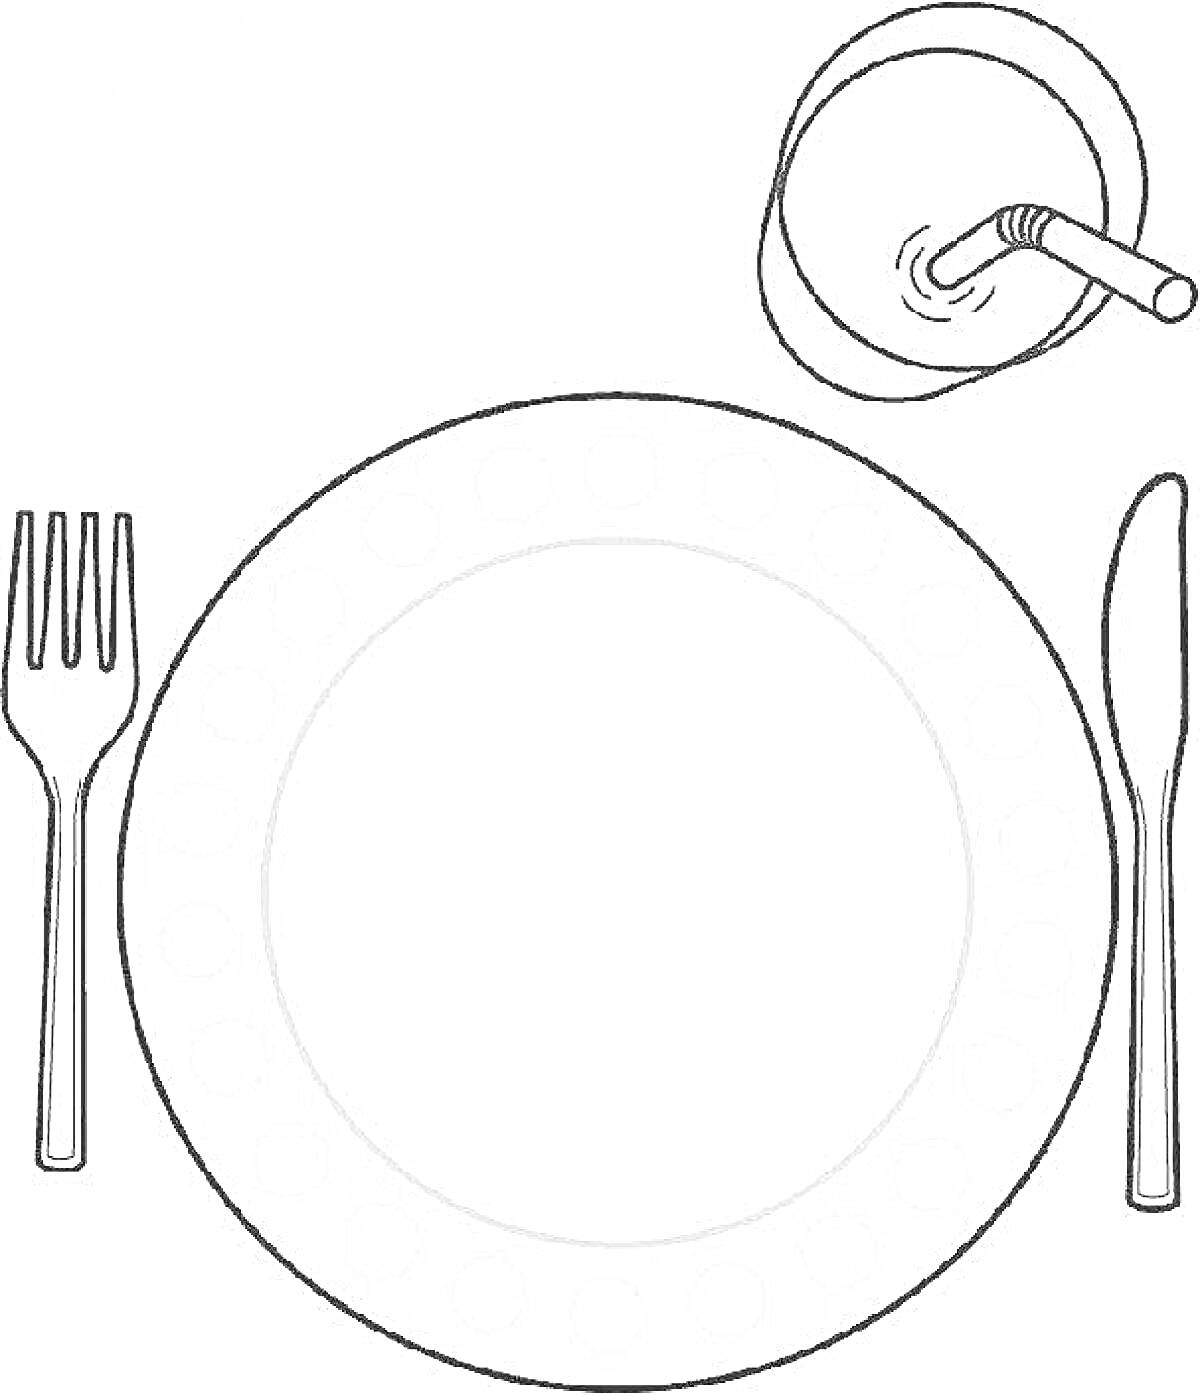 Раскраска с тарелкой, вилкой, ножом и стаканом с соломинкой